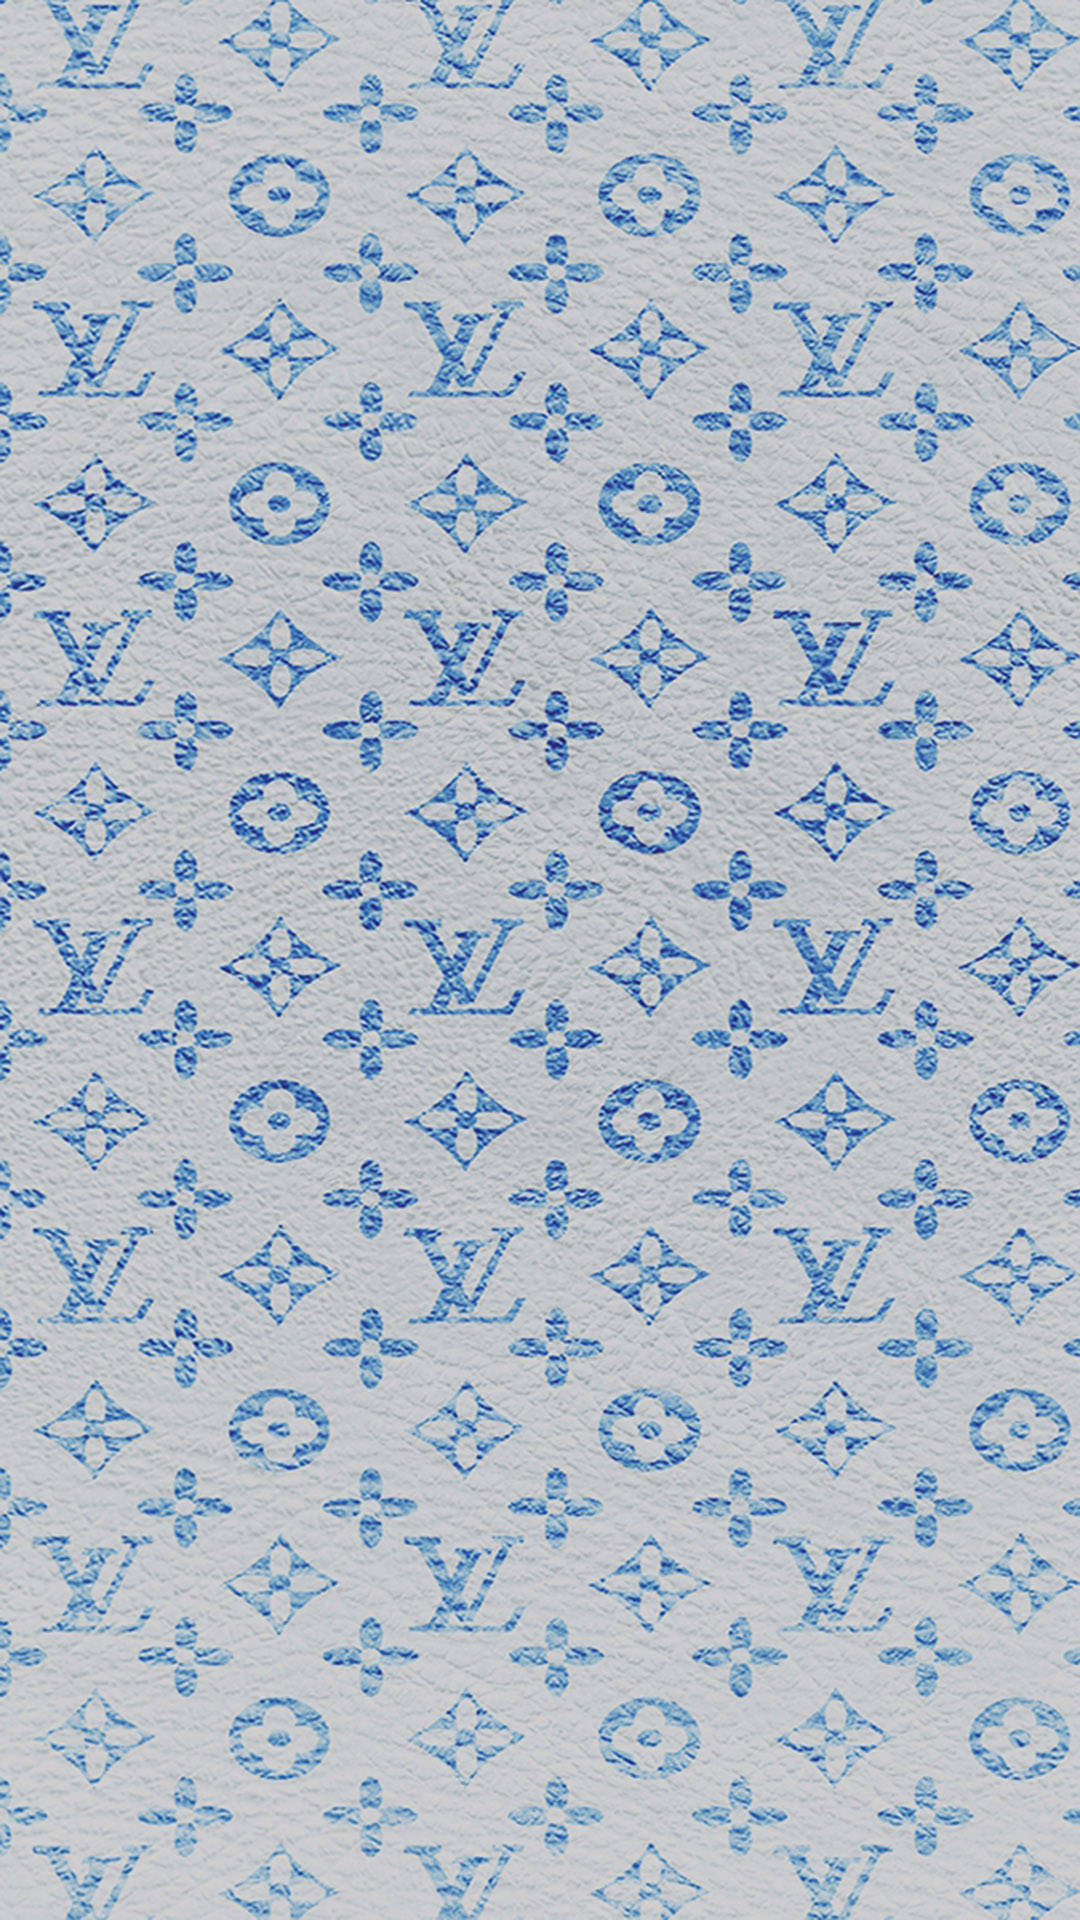 Telefone Louis Vuitton De Couro Azul Papel de Parede